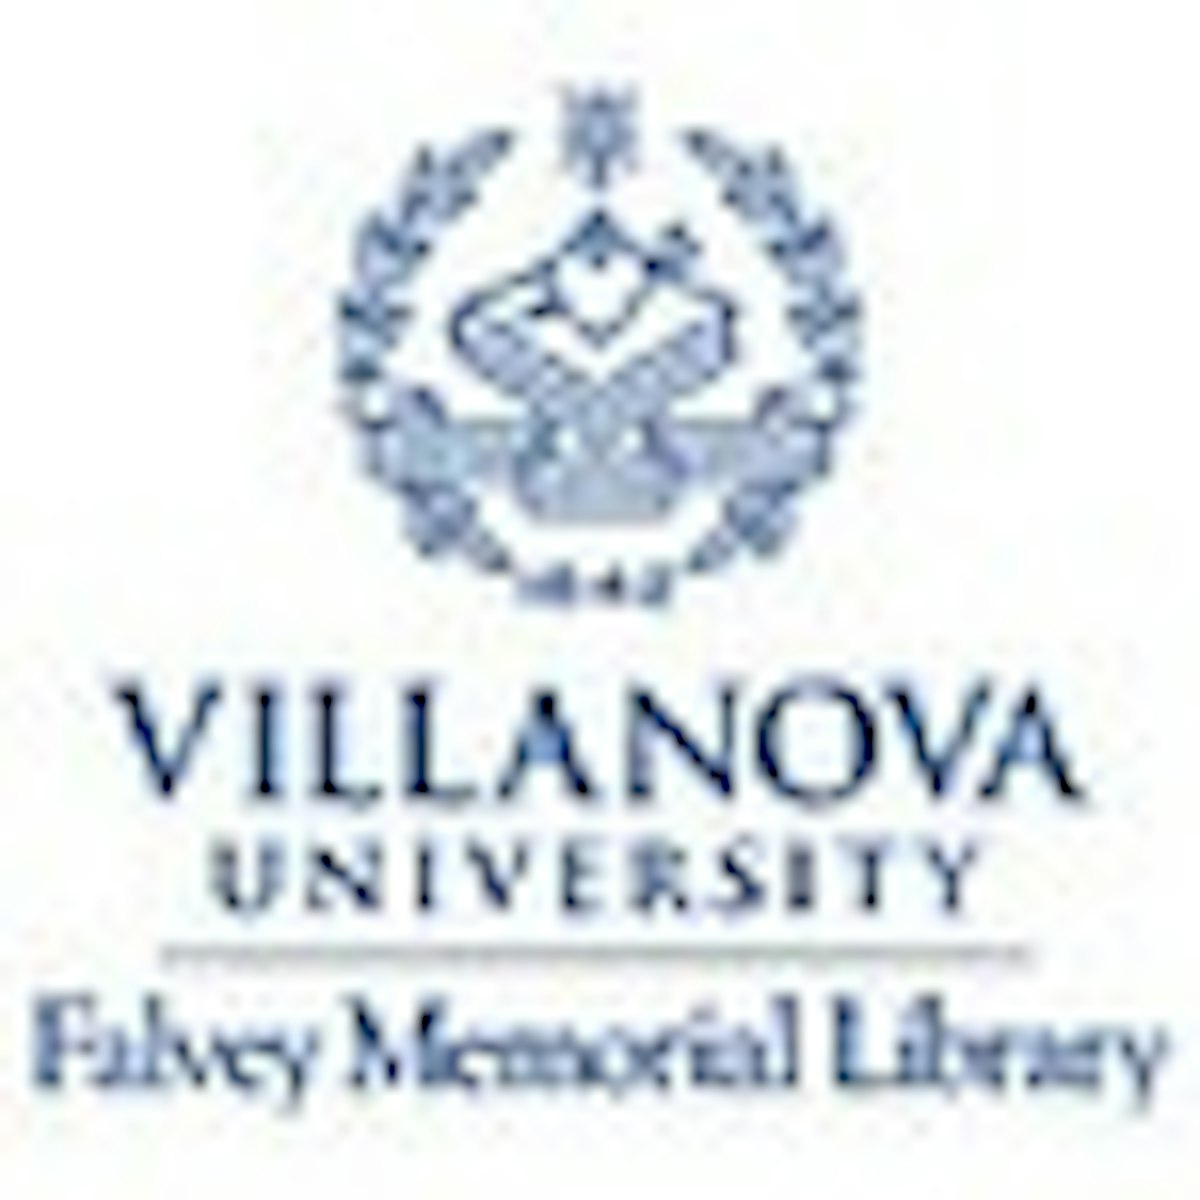 Villanova Digital Library